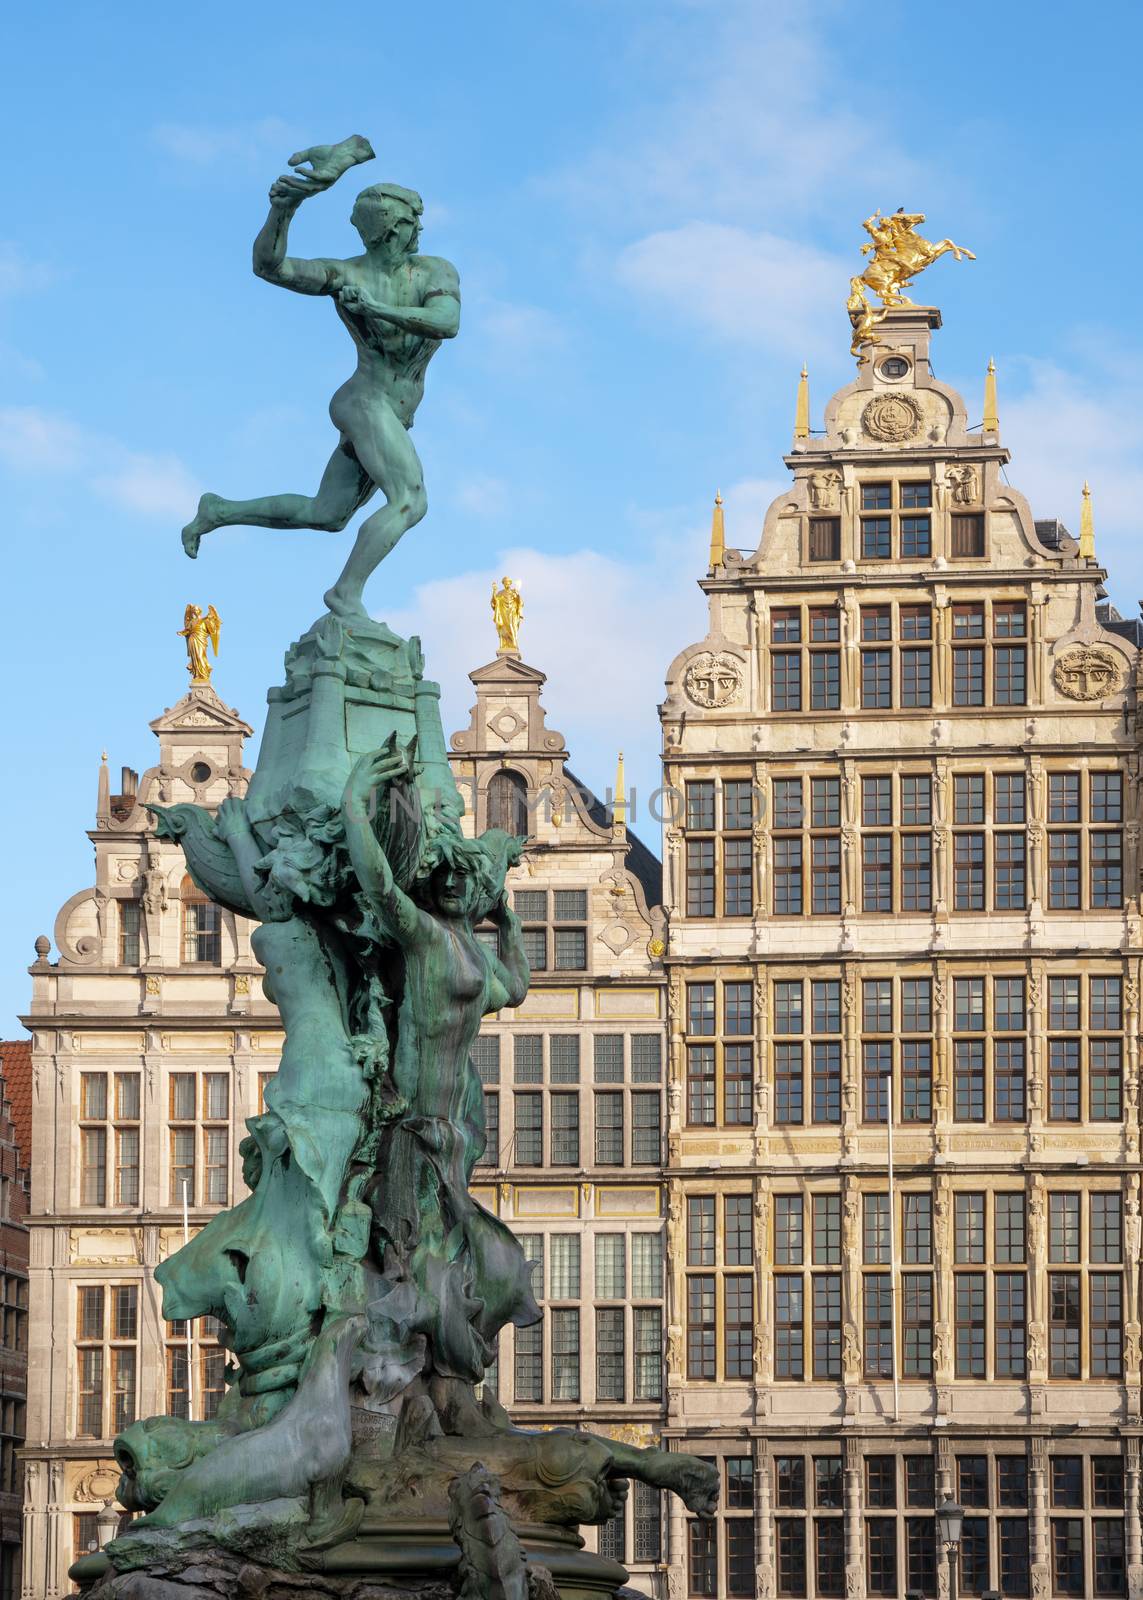 Grote Market, Antwerp, Belgium by alfotokunst